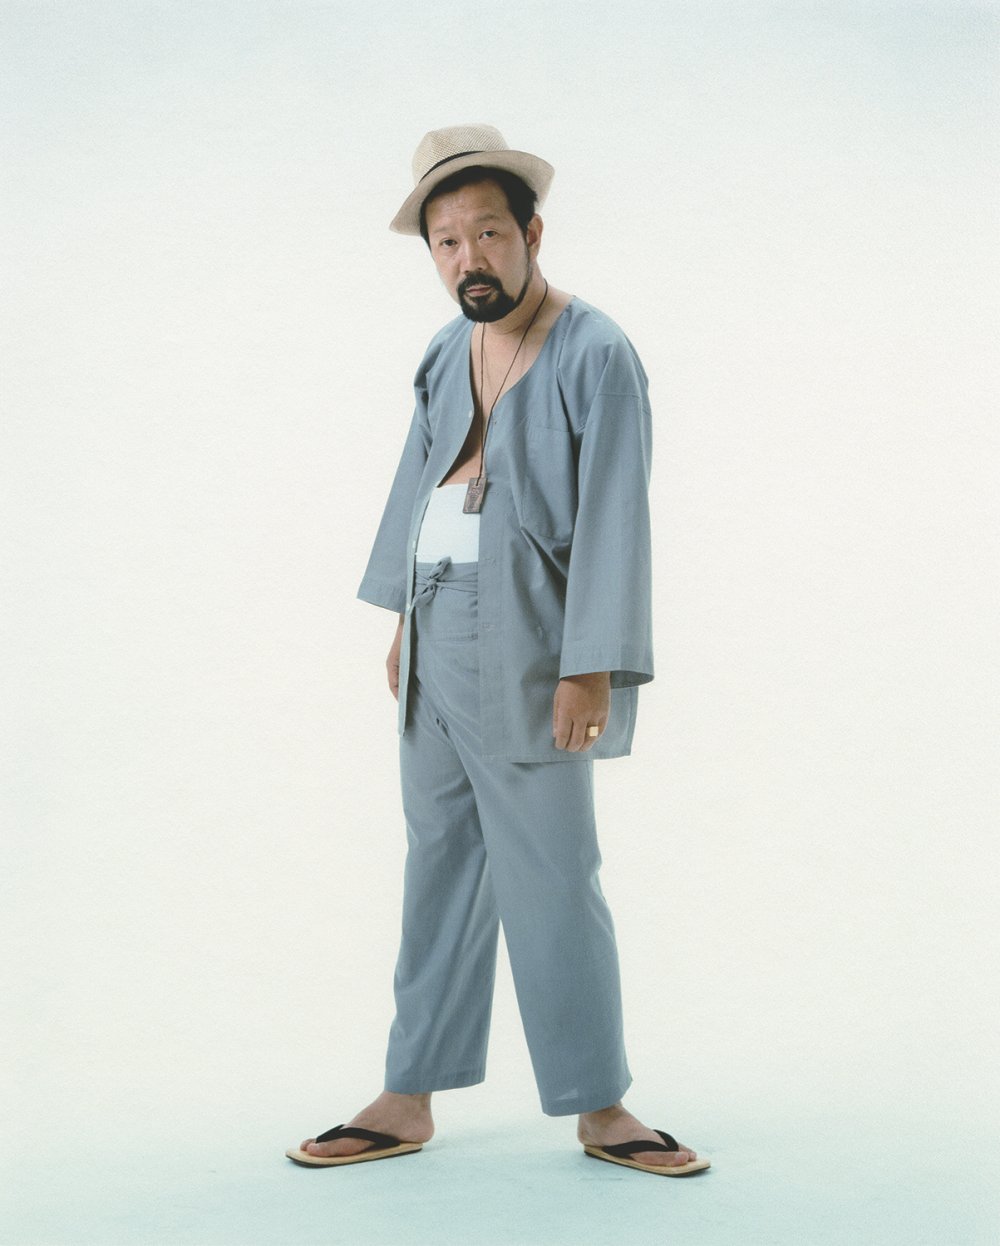 Shōmei Tōmatsu, Photographer Shomei Tomatsu, 1978